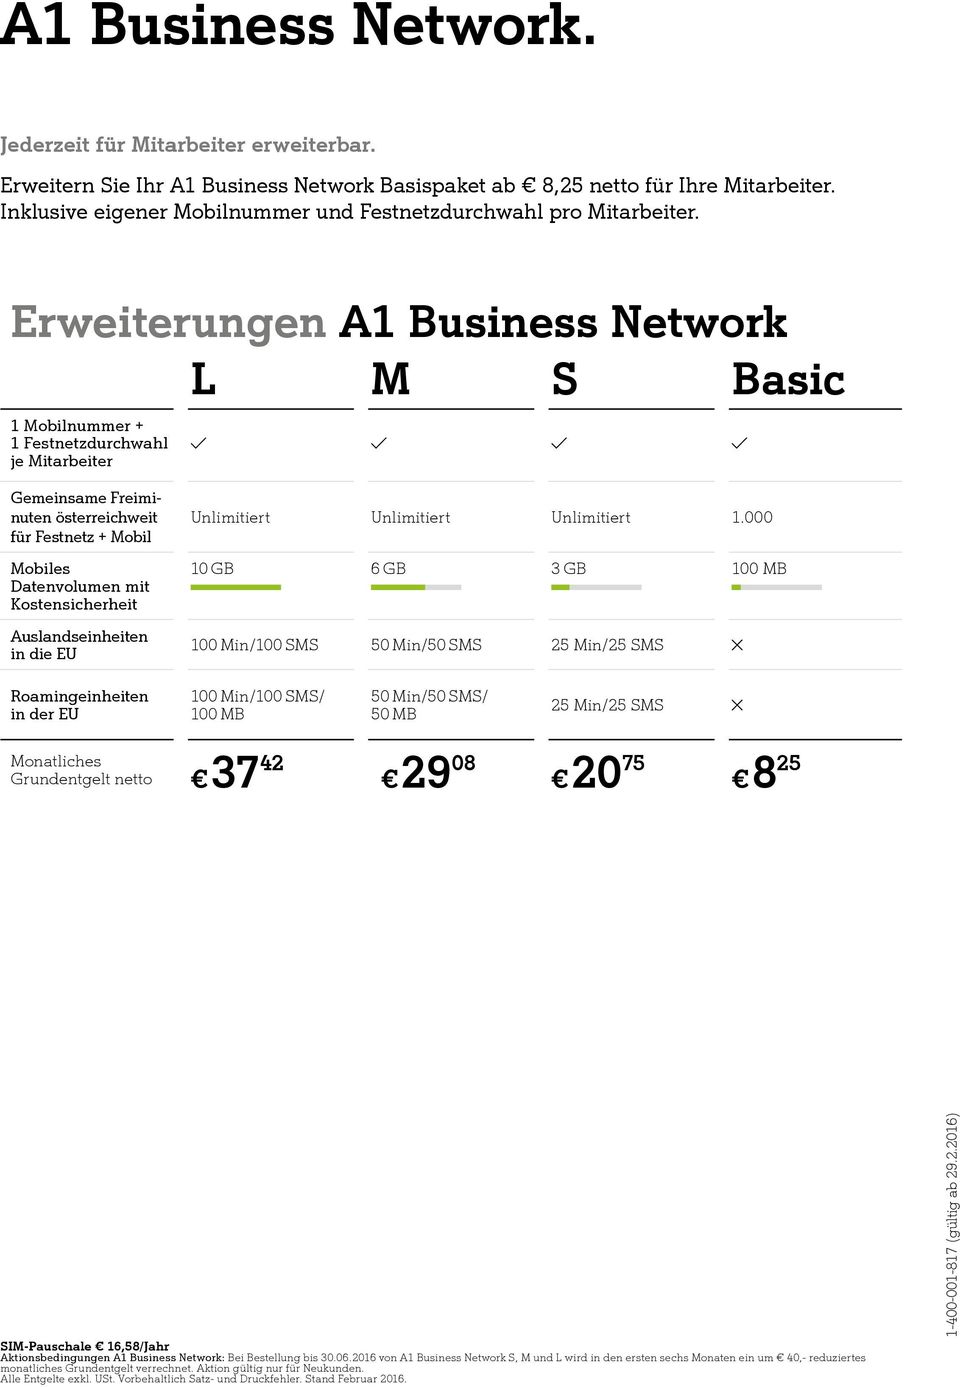 Erweiterungen A1 Business Network L M S Basic 1 Mobilnummer + 1 Festnetzdurchwahl je Mitarbeiter Gemeinsame Freiminuten österreichweit für Festnetz + Mobil Mobiles Datenvolumen mit Kostensicherheit